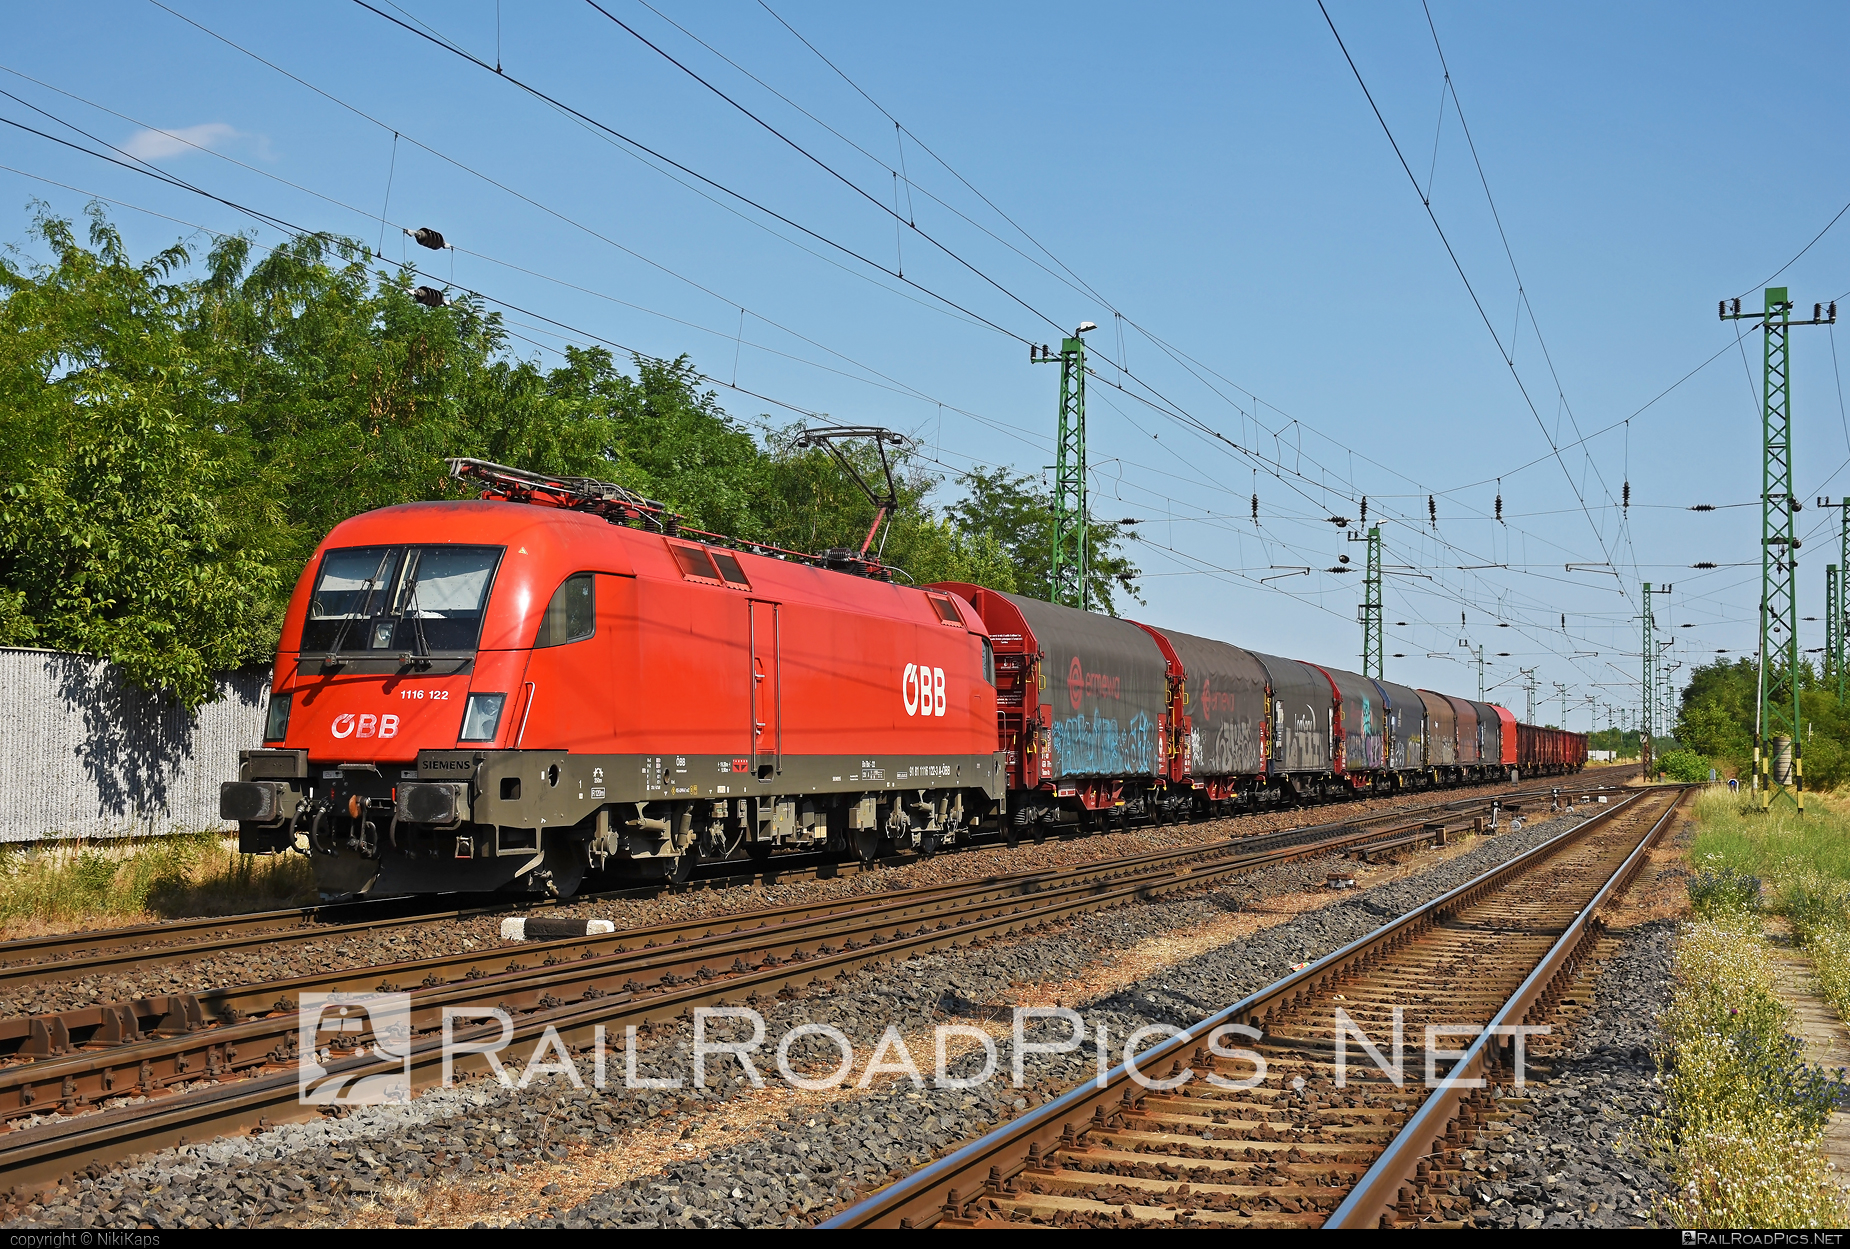 Siemens ES 64 U2 - 1116 122 operated by Rail Cargo Austria AG #es64 #es64u2 #eurosprinter #graffiti #mixofcargo #obb #osterreichischebundesbahnen #rcw #siemens #siemensEs64 #siemensEs64u2 #siemenstaurus #taurus #tauruslocomotive